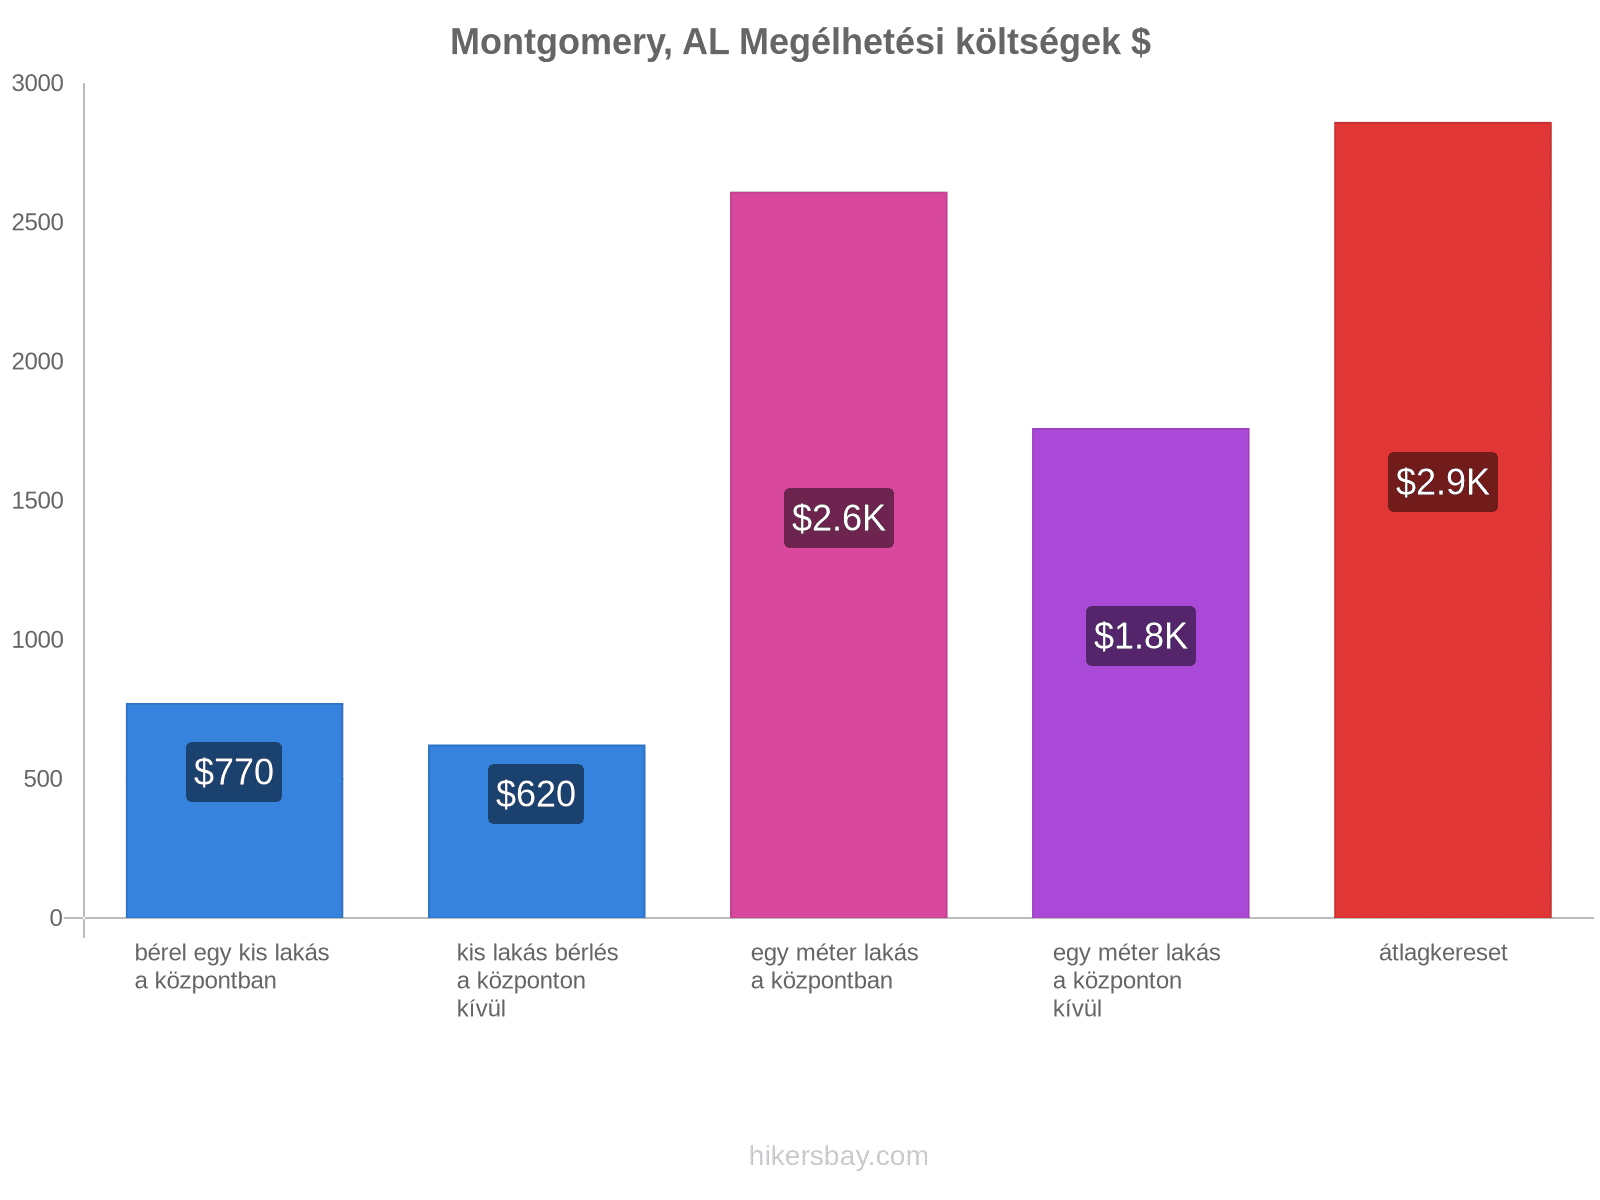 Montgomery, AL megélhetési költségek hikersbay.com